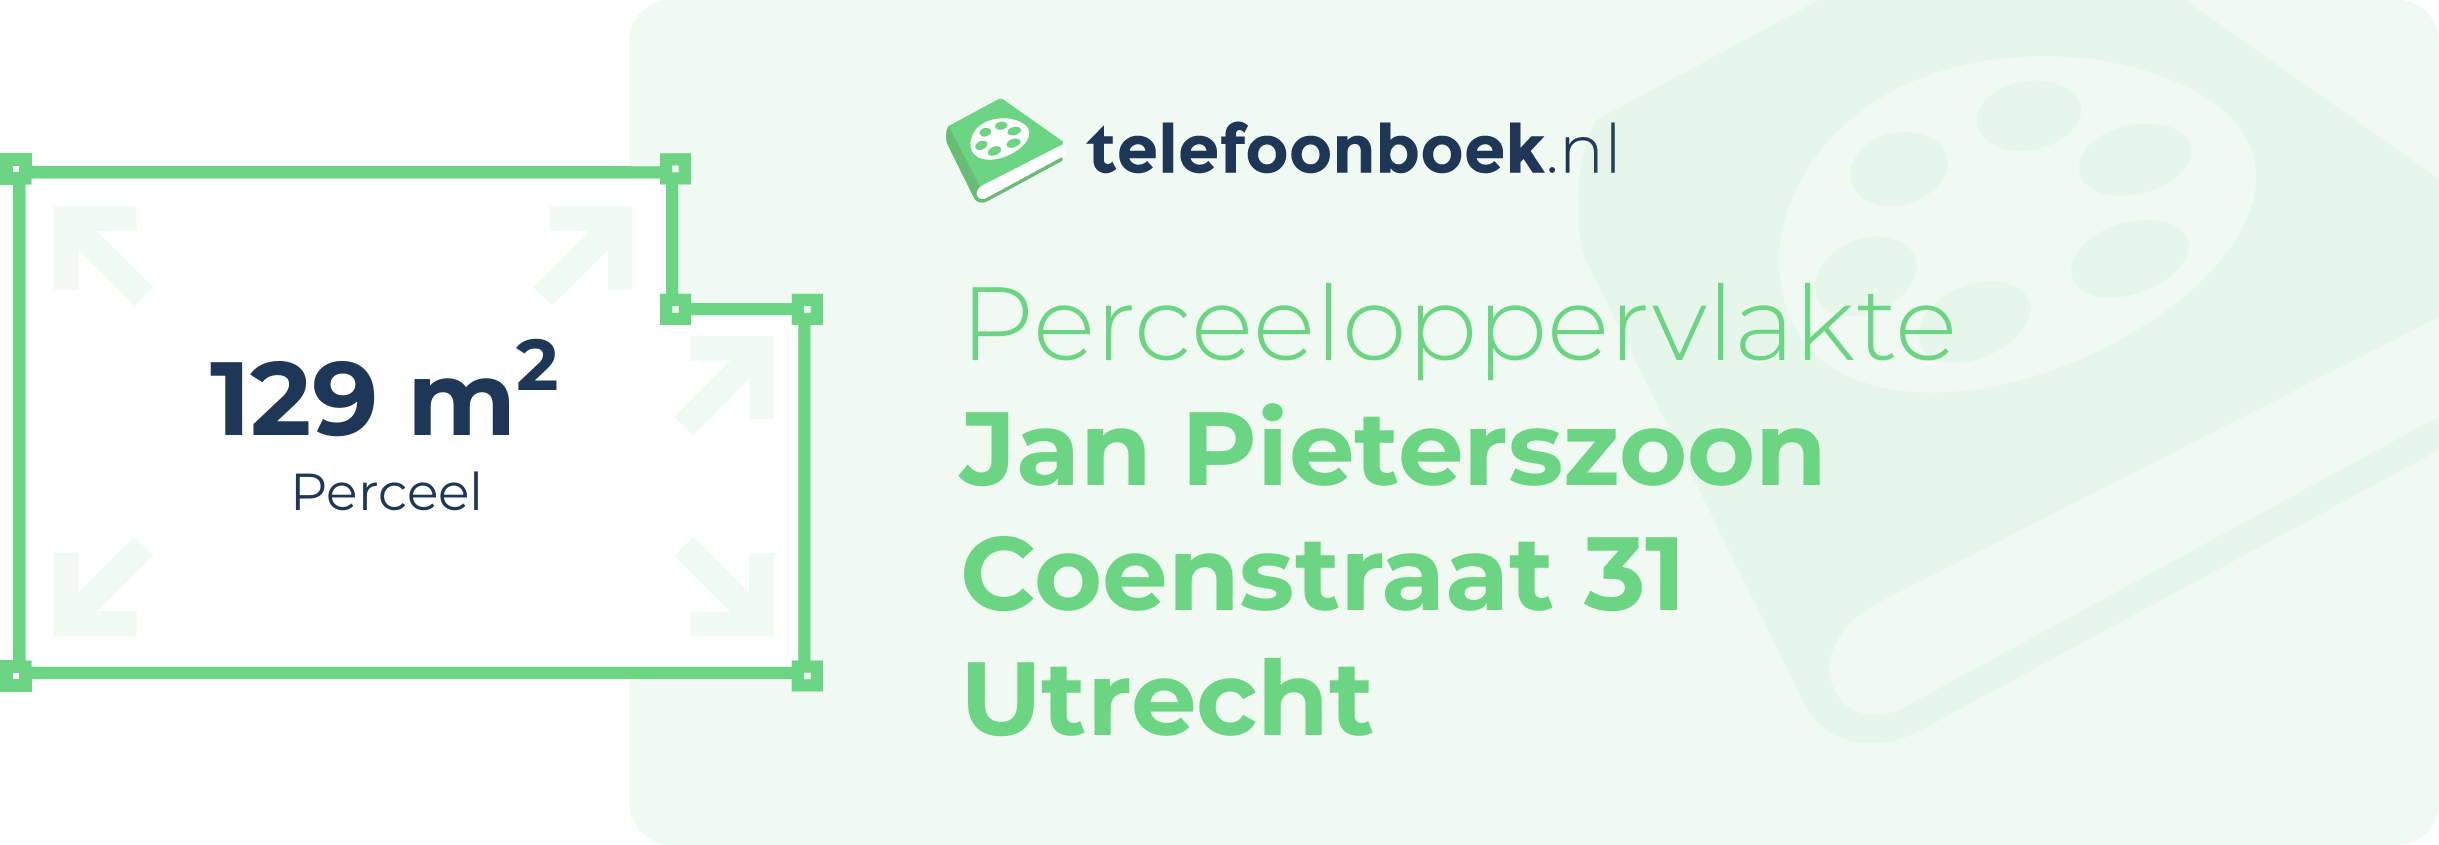 Perceeloppervlakte Jan Pieterszoon Coenstraat 31 Utrecht